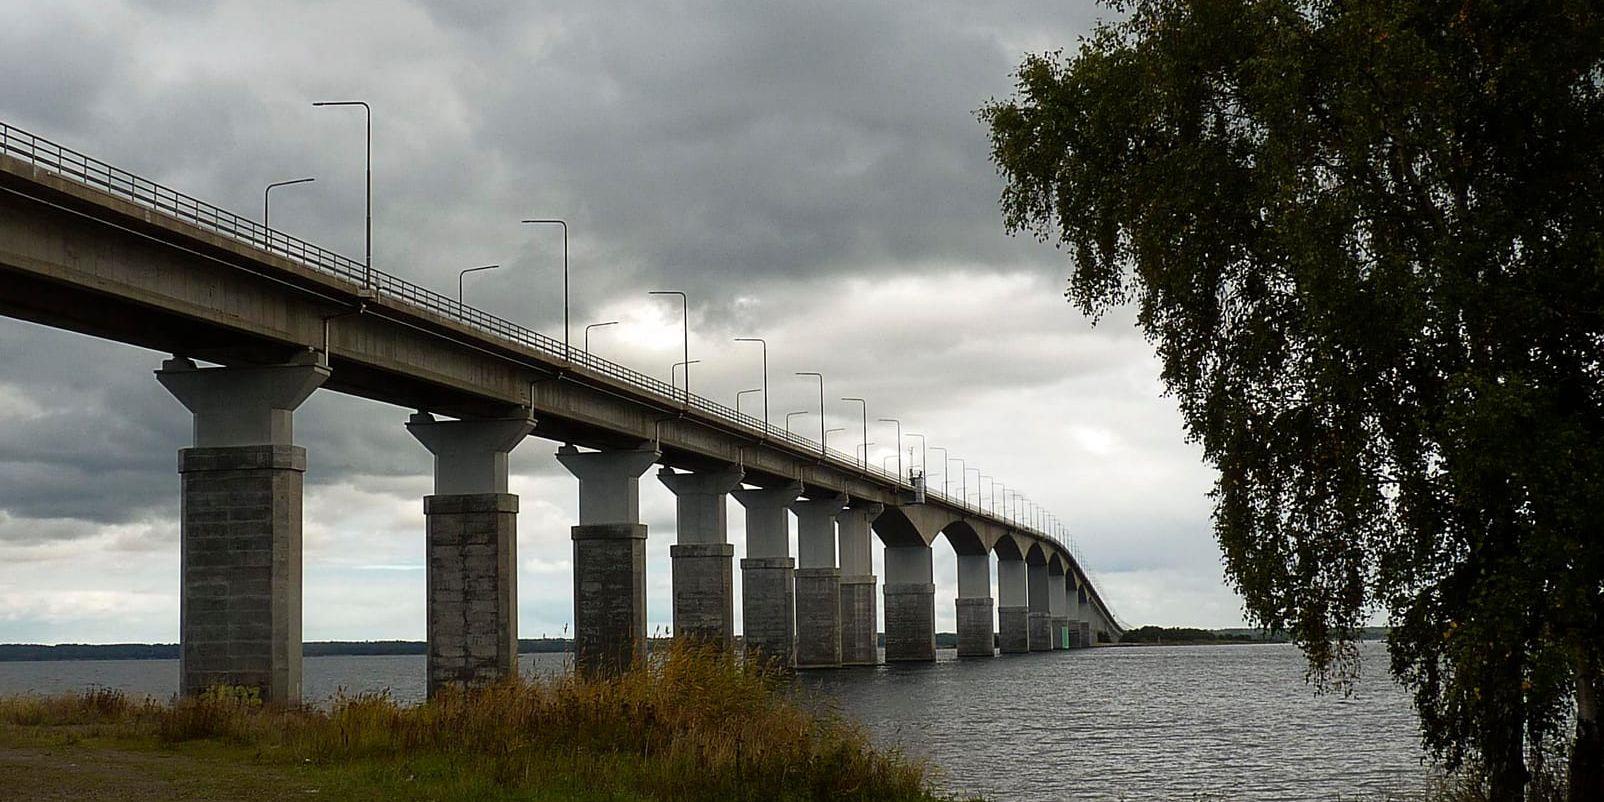 Ölandsborna vill inte slå ihop kommunerna Borgholm och Mörbylånga. Arkivbild från Ölandsbron.